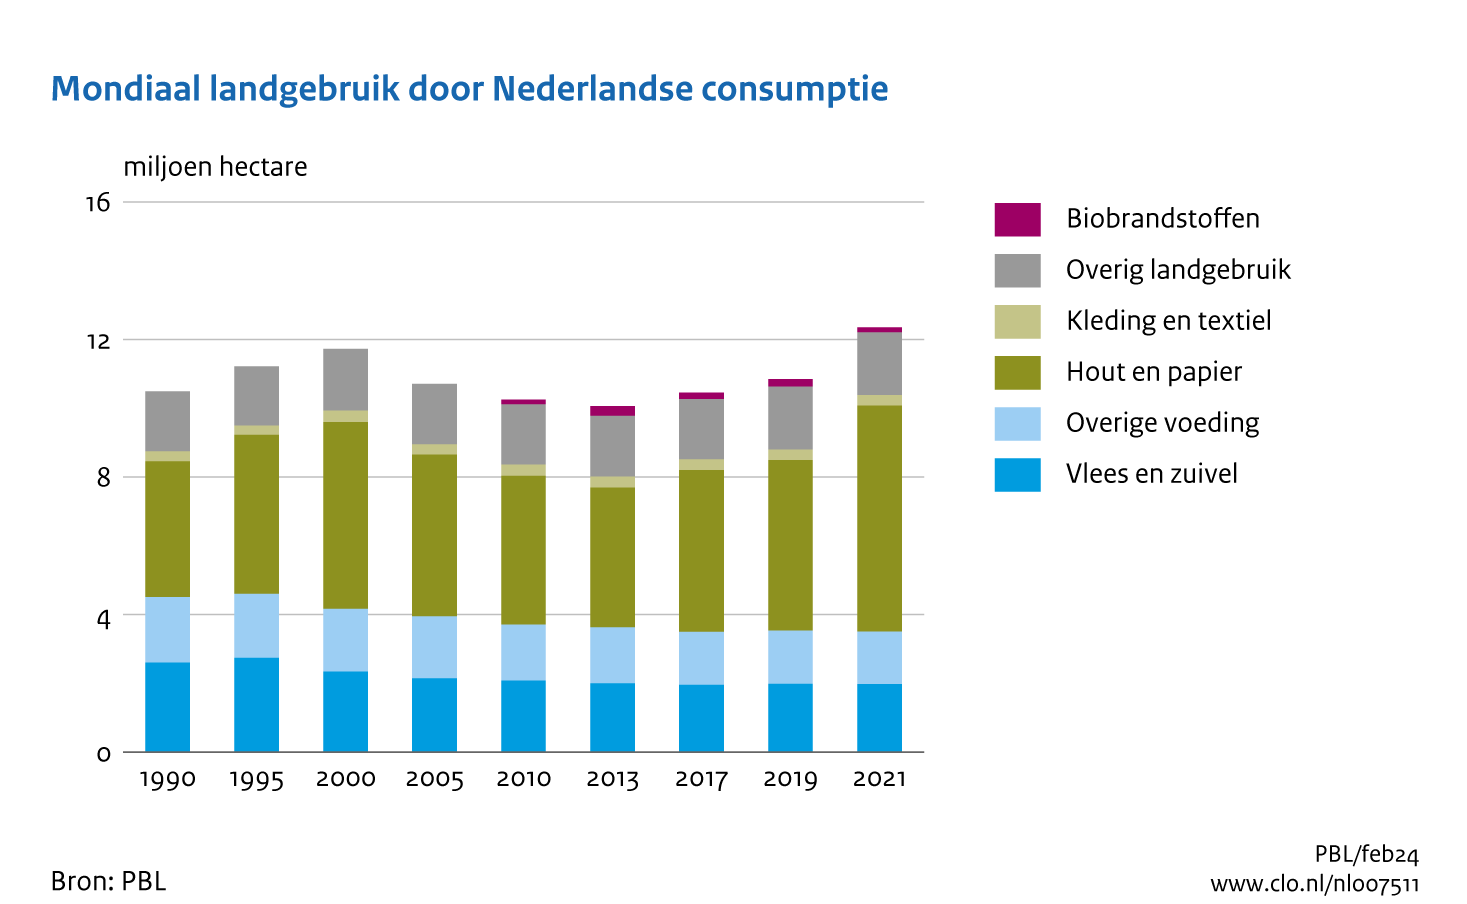 De totale Nederlandse landvoetafdruk in 2021 is hoger dan die in alle eerder berekende jaren in de periode 1990-2021. Ook per persoon daalde de voetafdruk sinds het jaar 2000, maar anno 2021 zit deze weer op hetzelfde niveau als in 1990 (ruim 0,7 hectare). Meer informatie in de lopende tekst. 